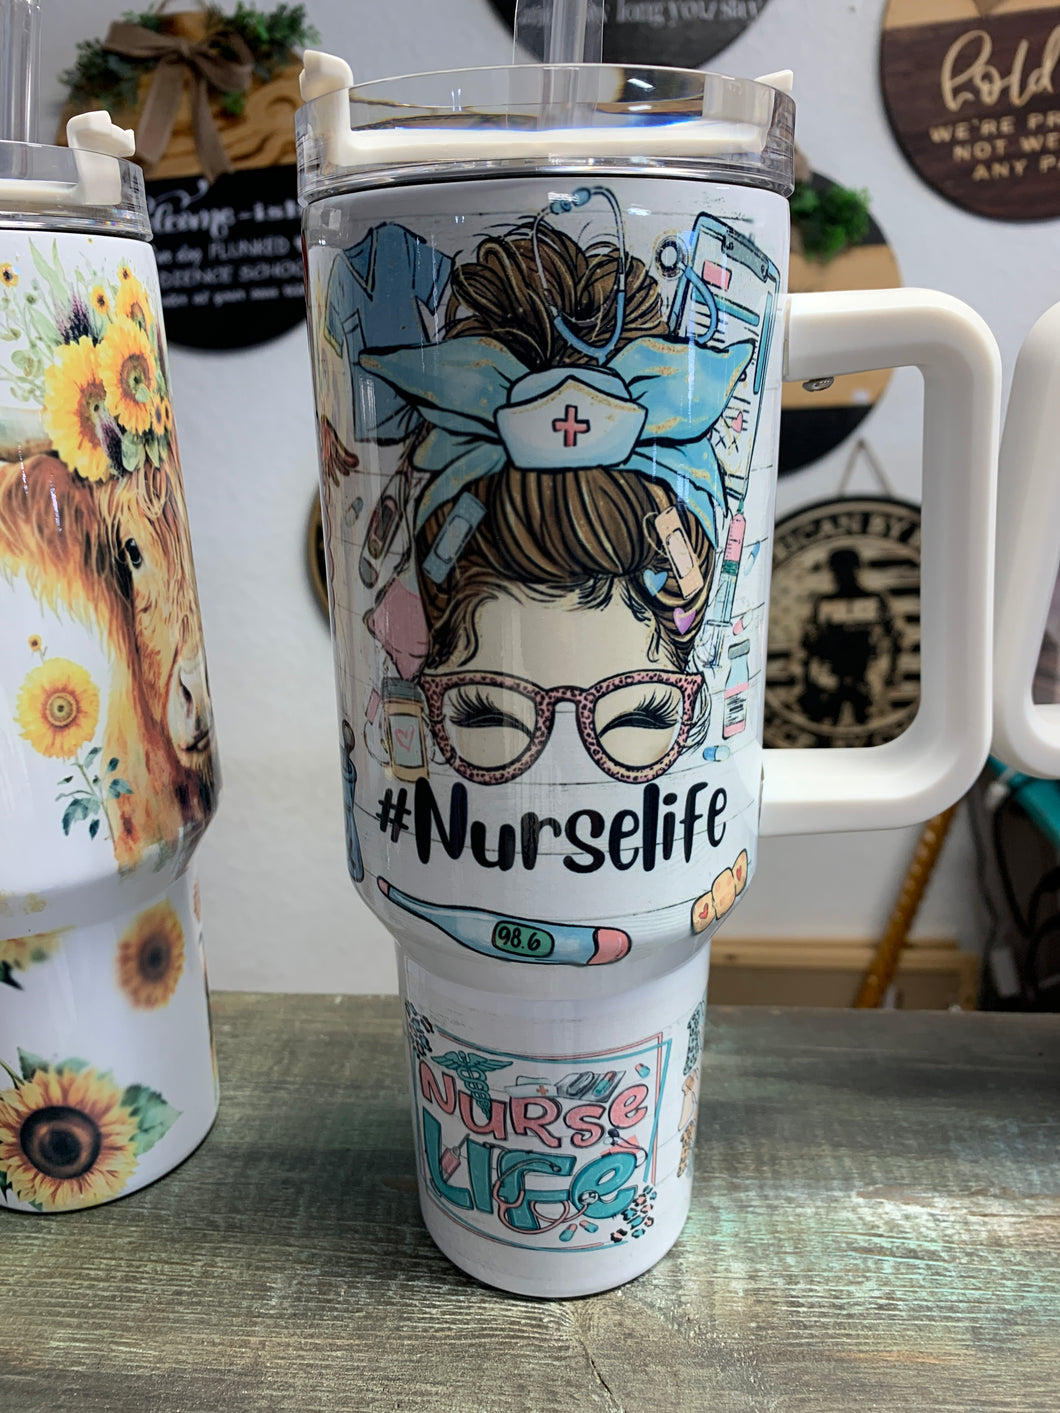 Nurse life 40oz cup